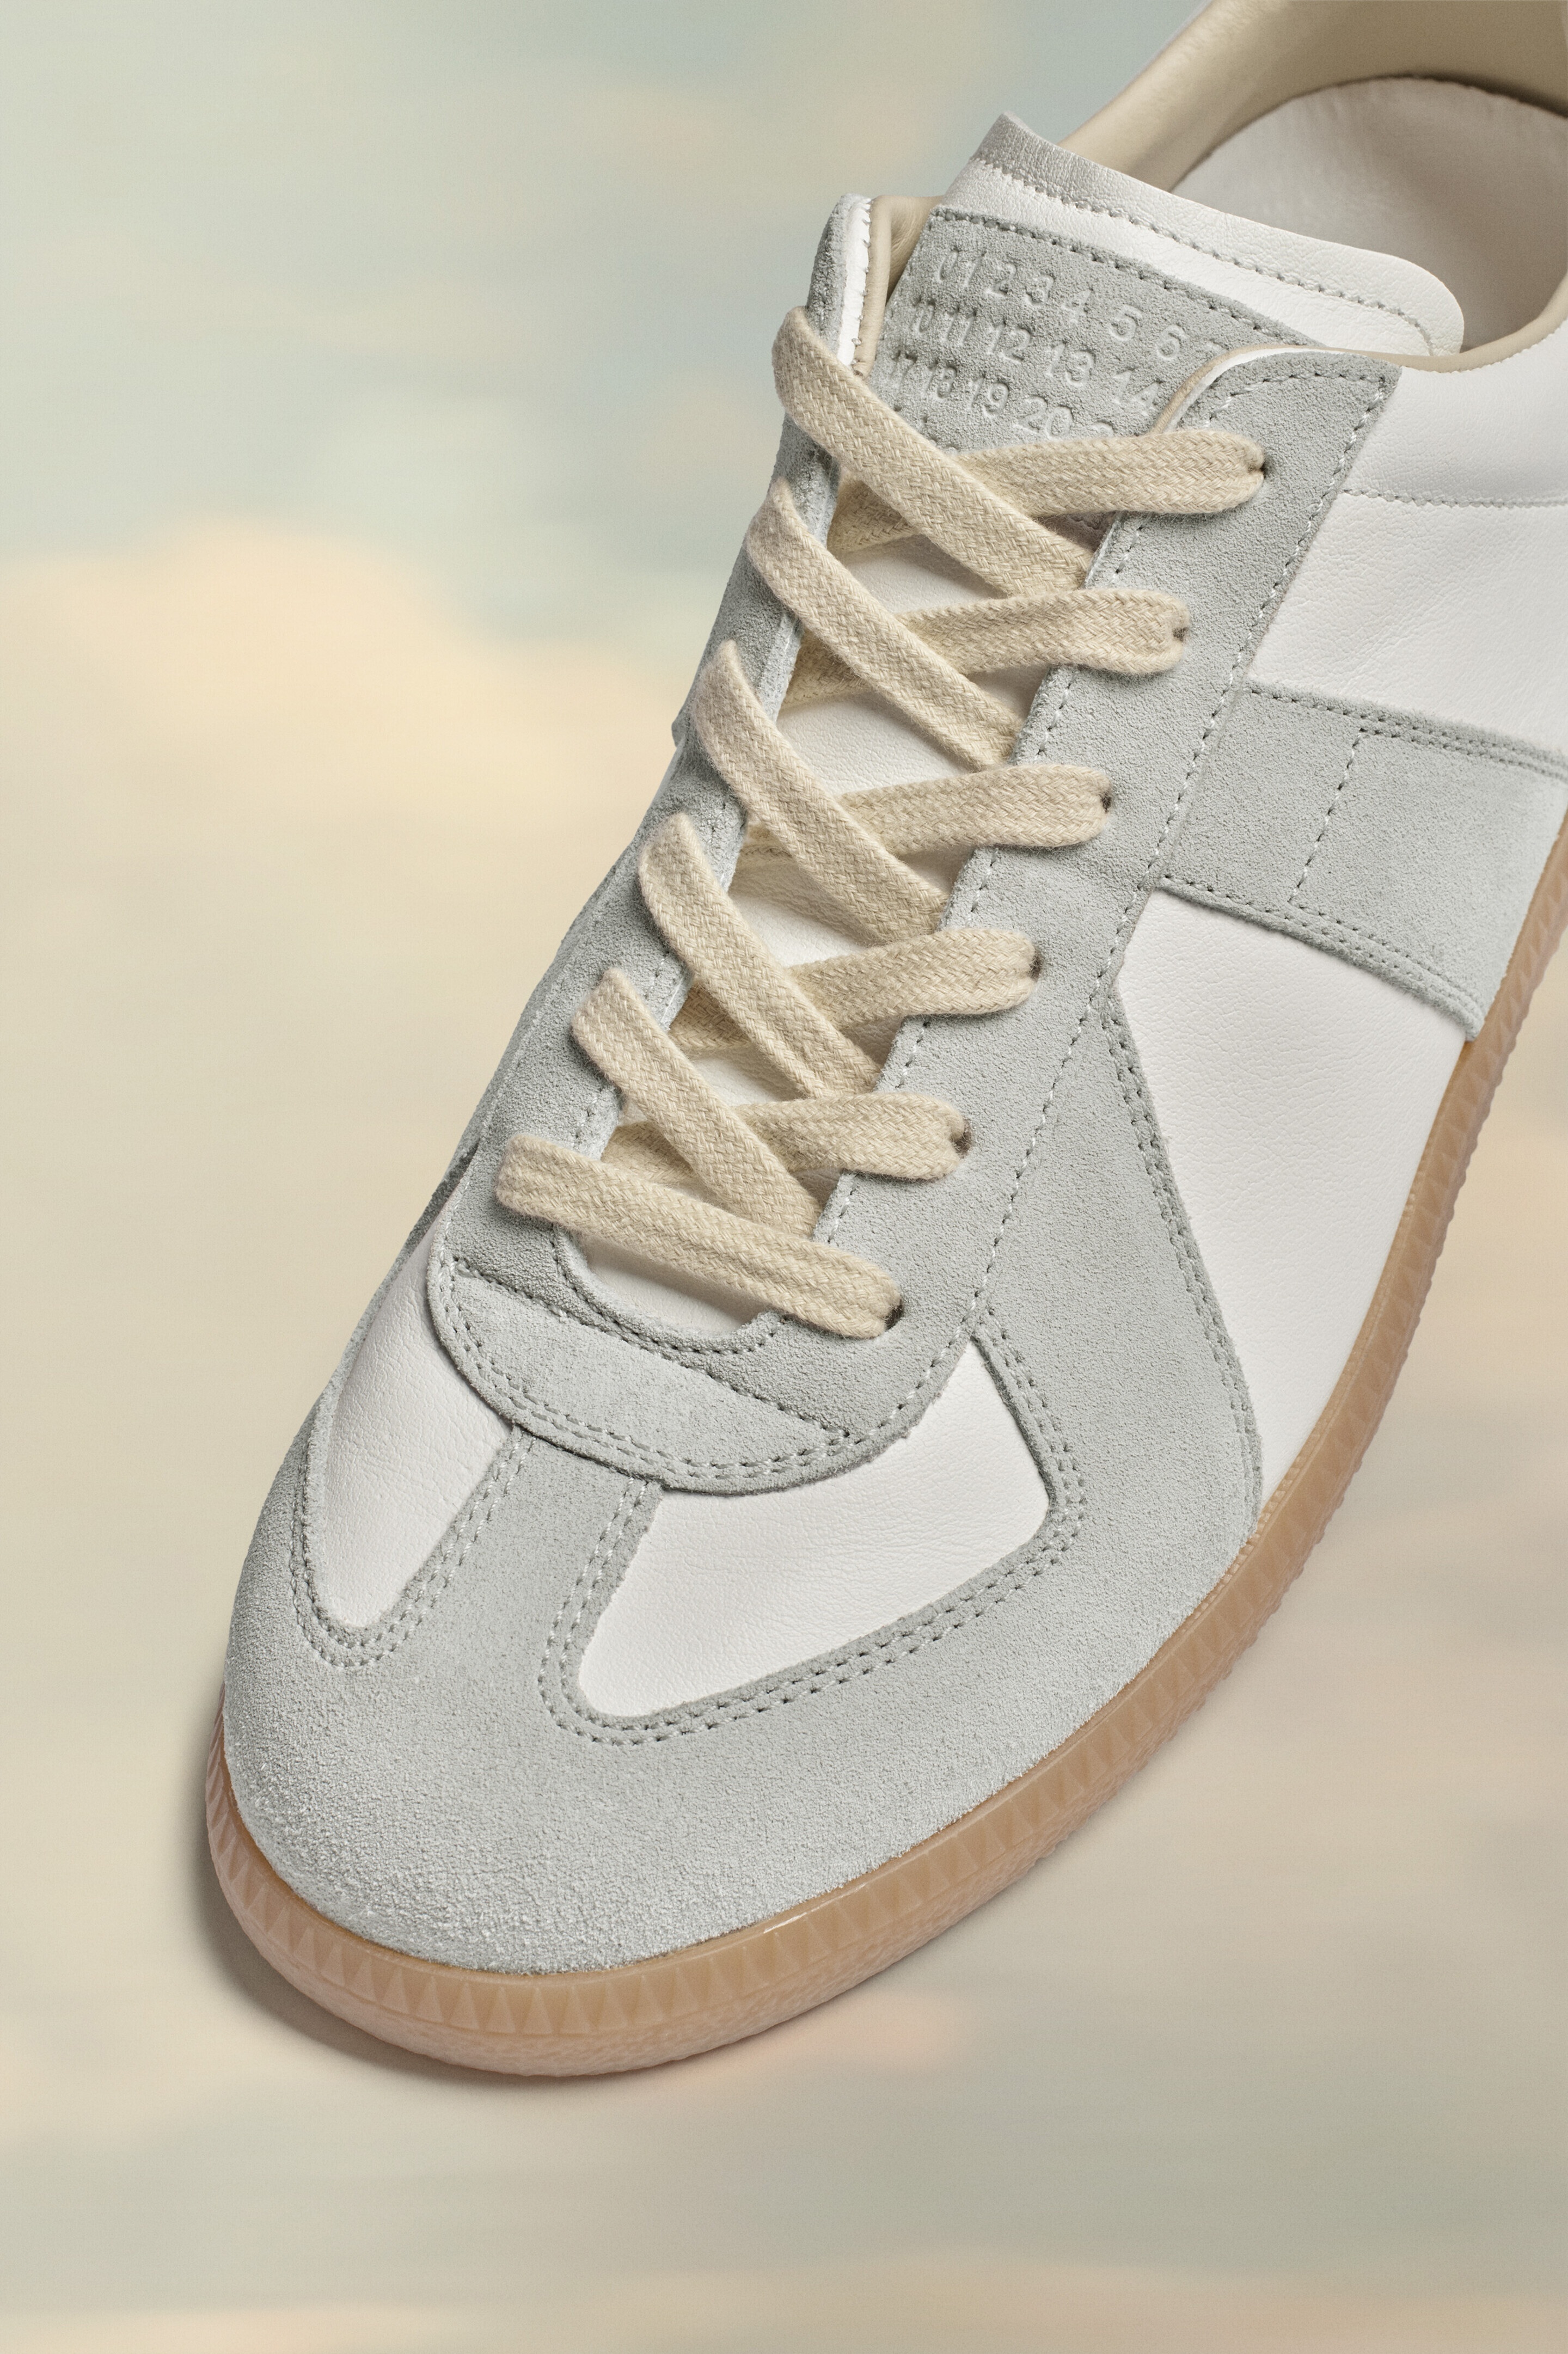 Replica sneakers - 4